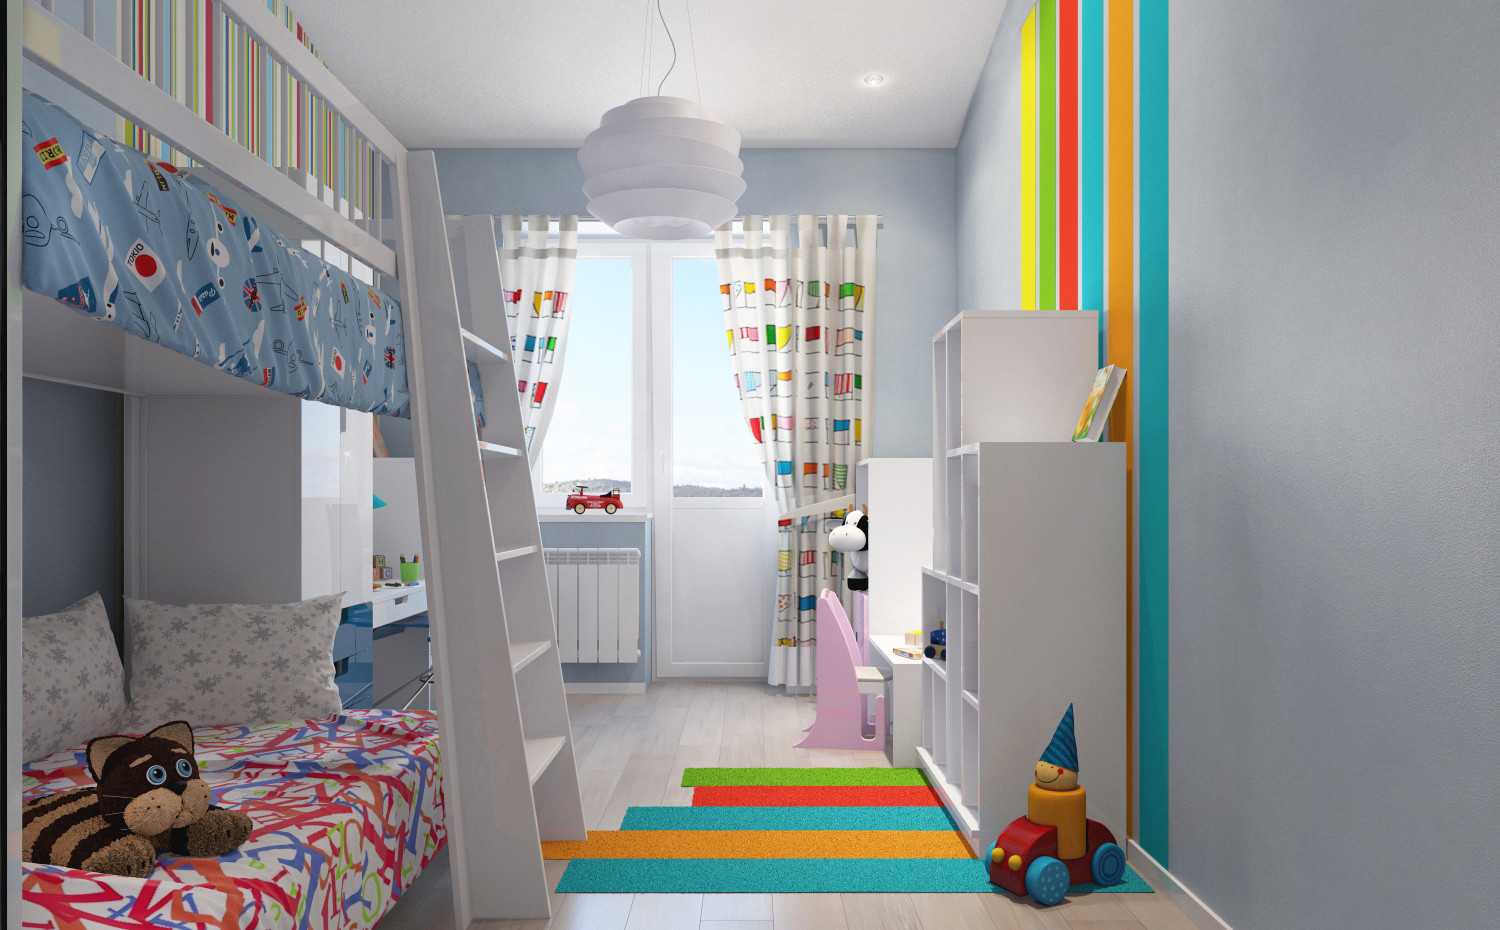 Оформляем спальню ребенка: возможности использования комбинированных обоев в детской комнате